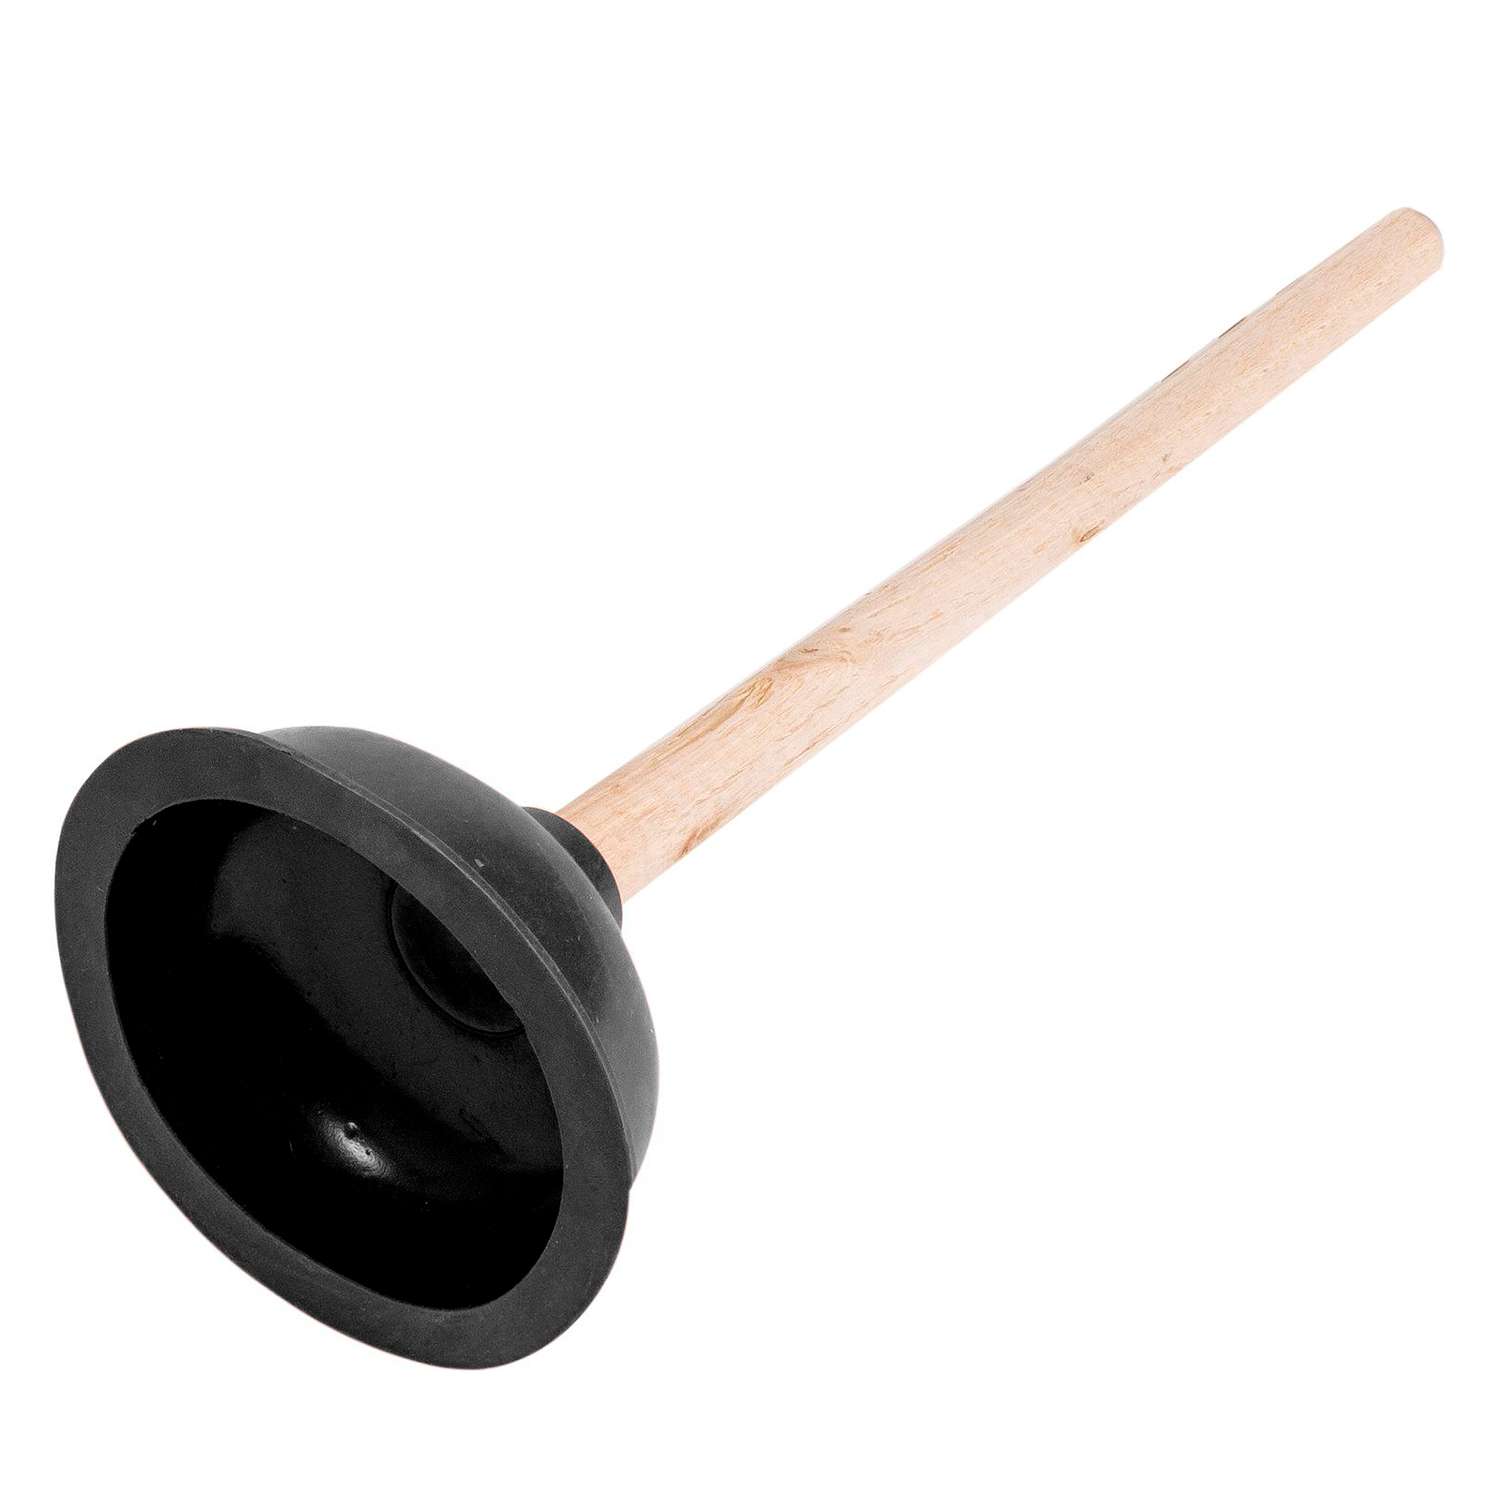 Вантуз Домашний сундук черный деревянная ручка 42см D13.5см ДС-299 - фото 1